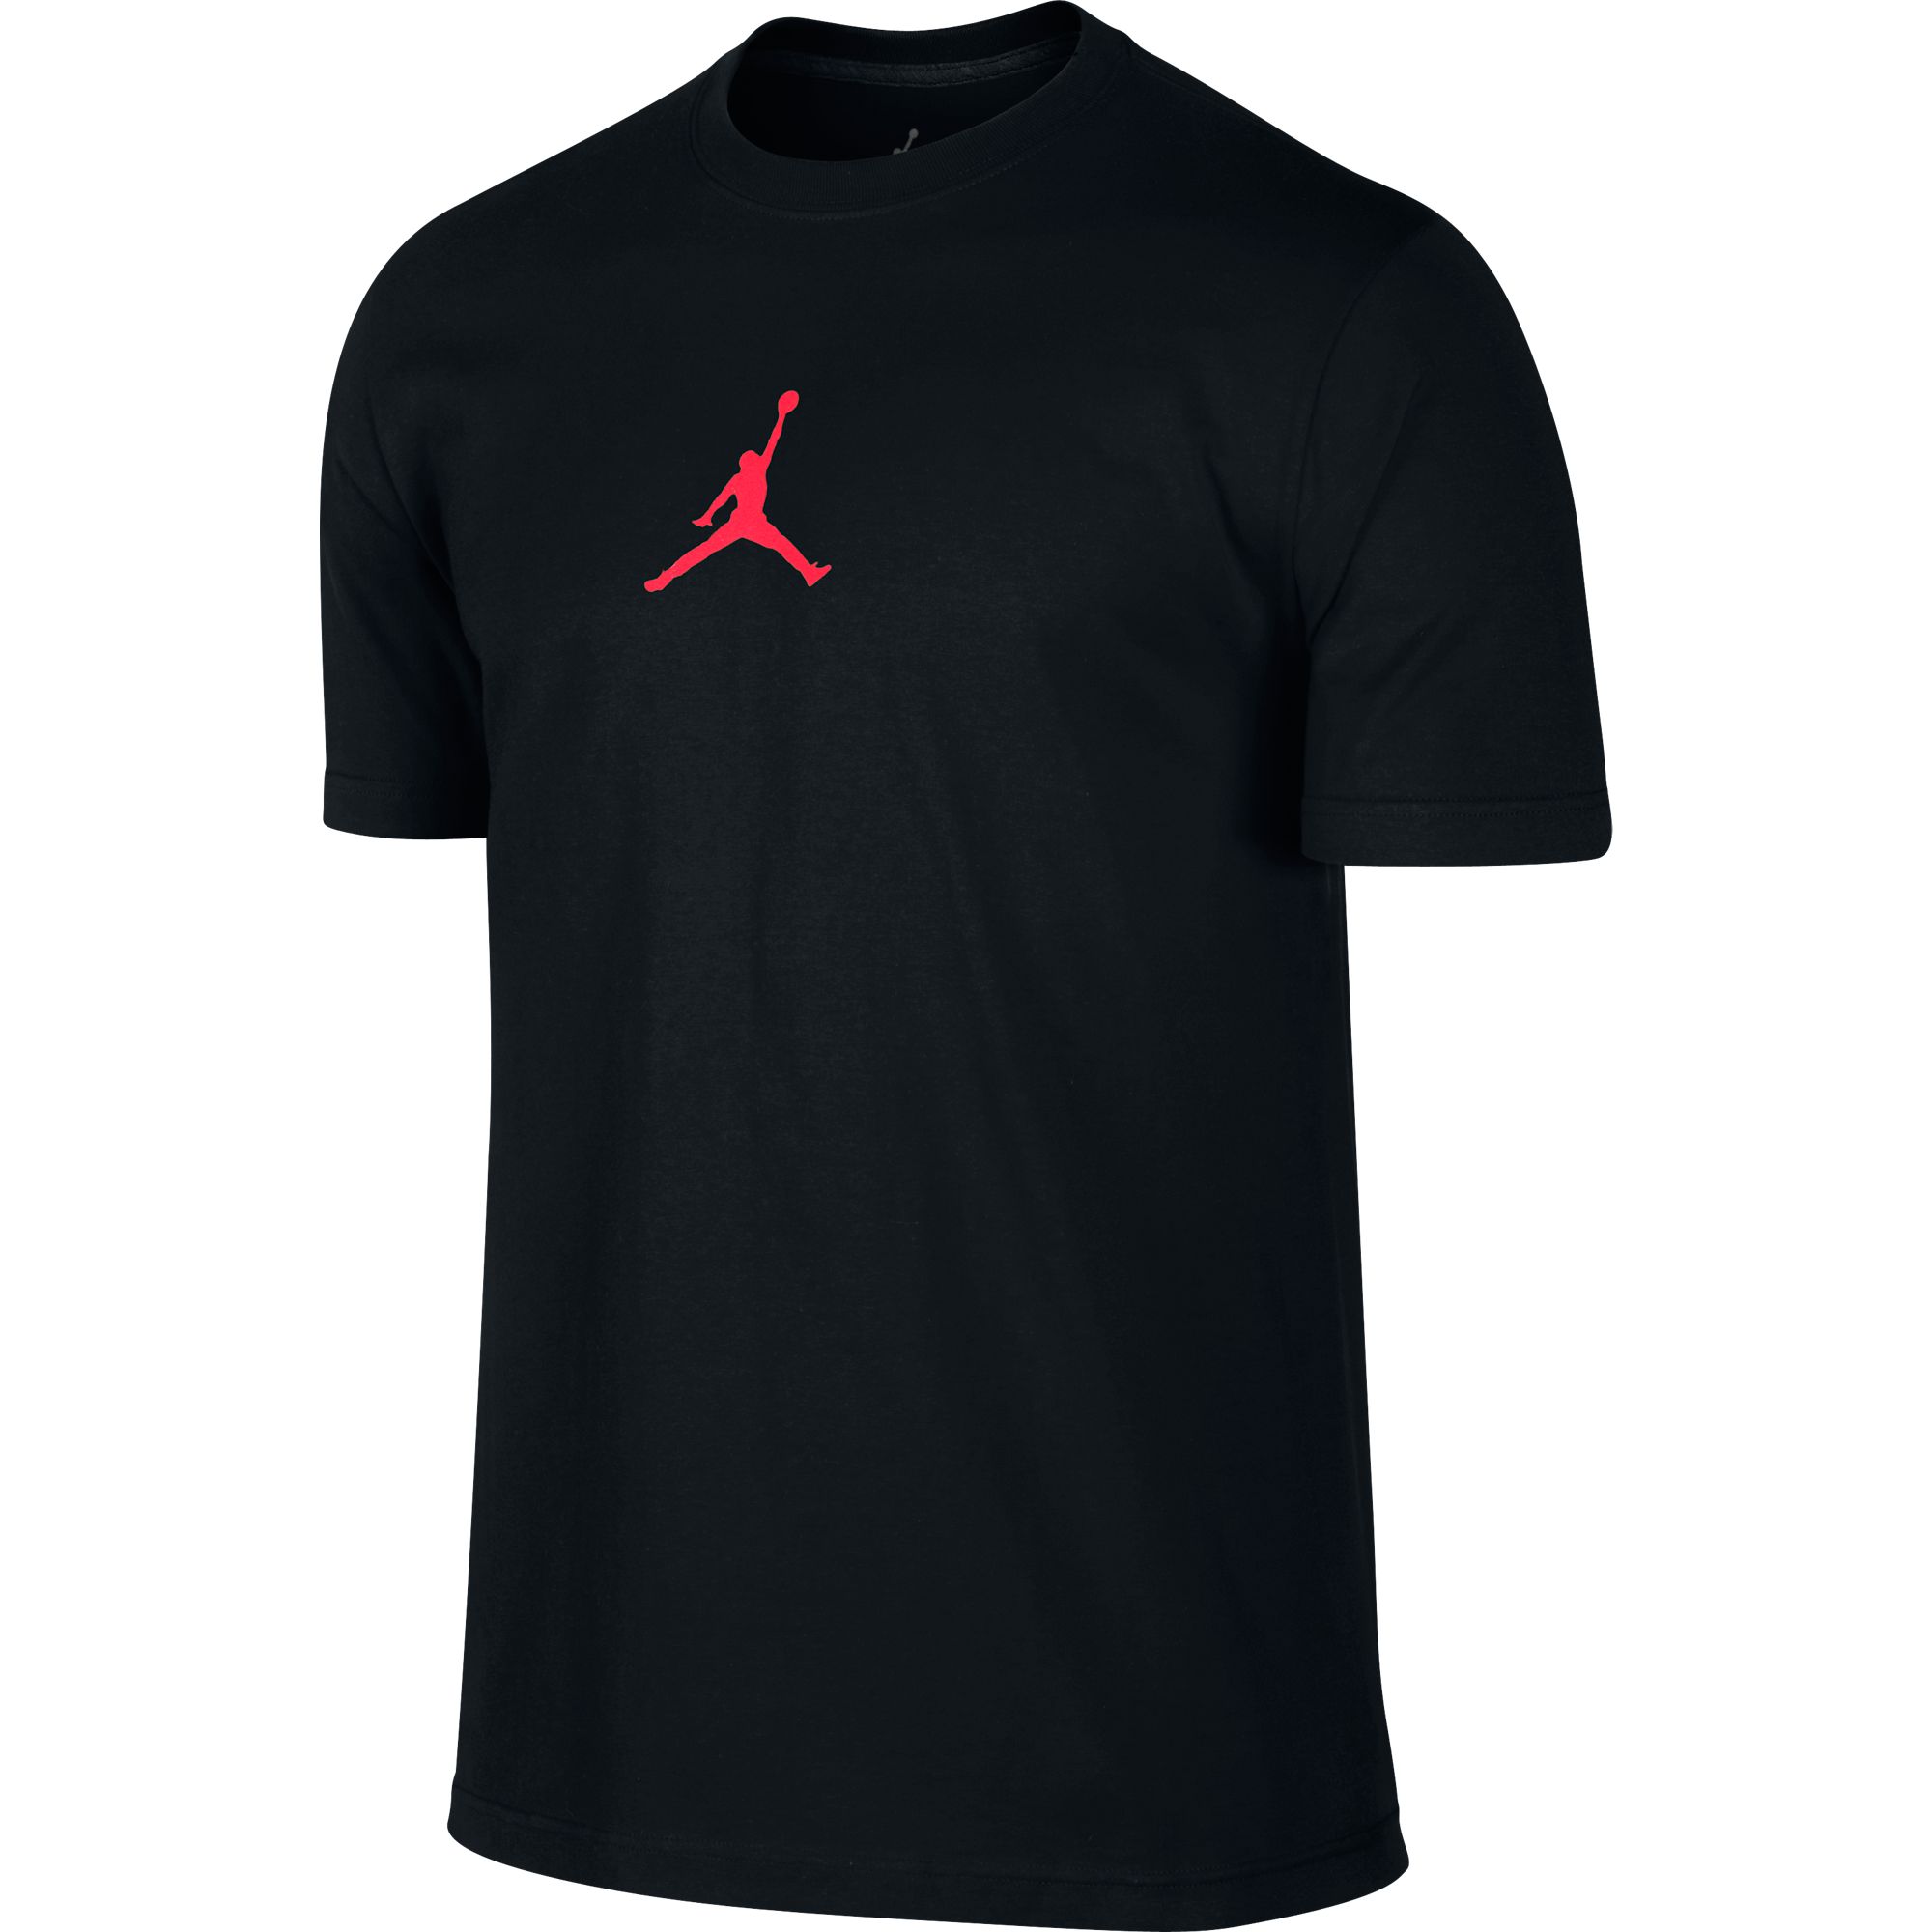 Jordan 23/7 Jumpman Logo Printed Men's T-Shirt Black/Red 612198-102 | eBay